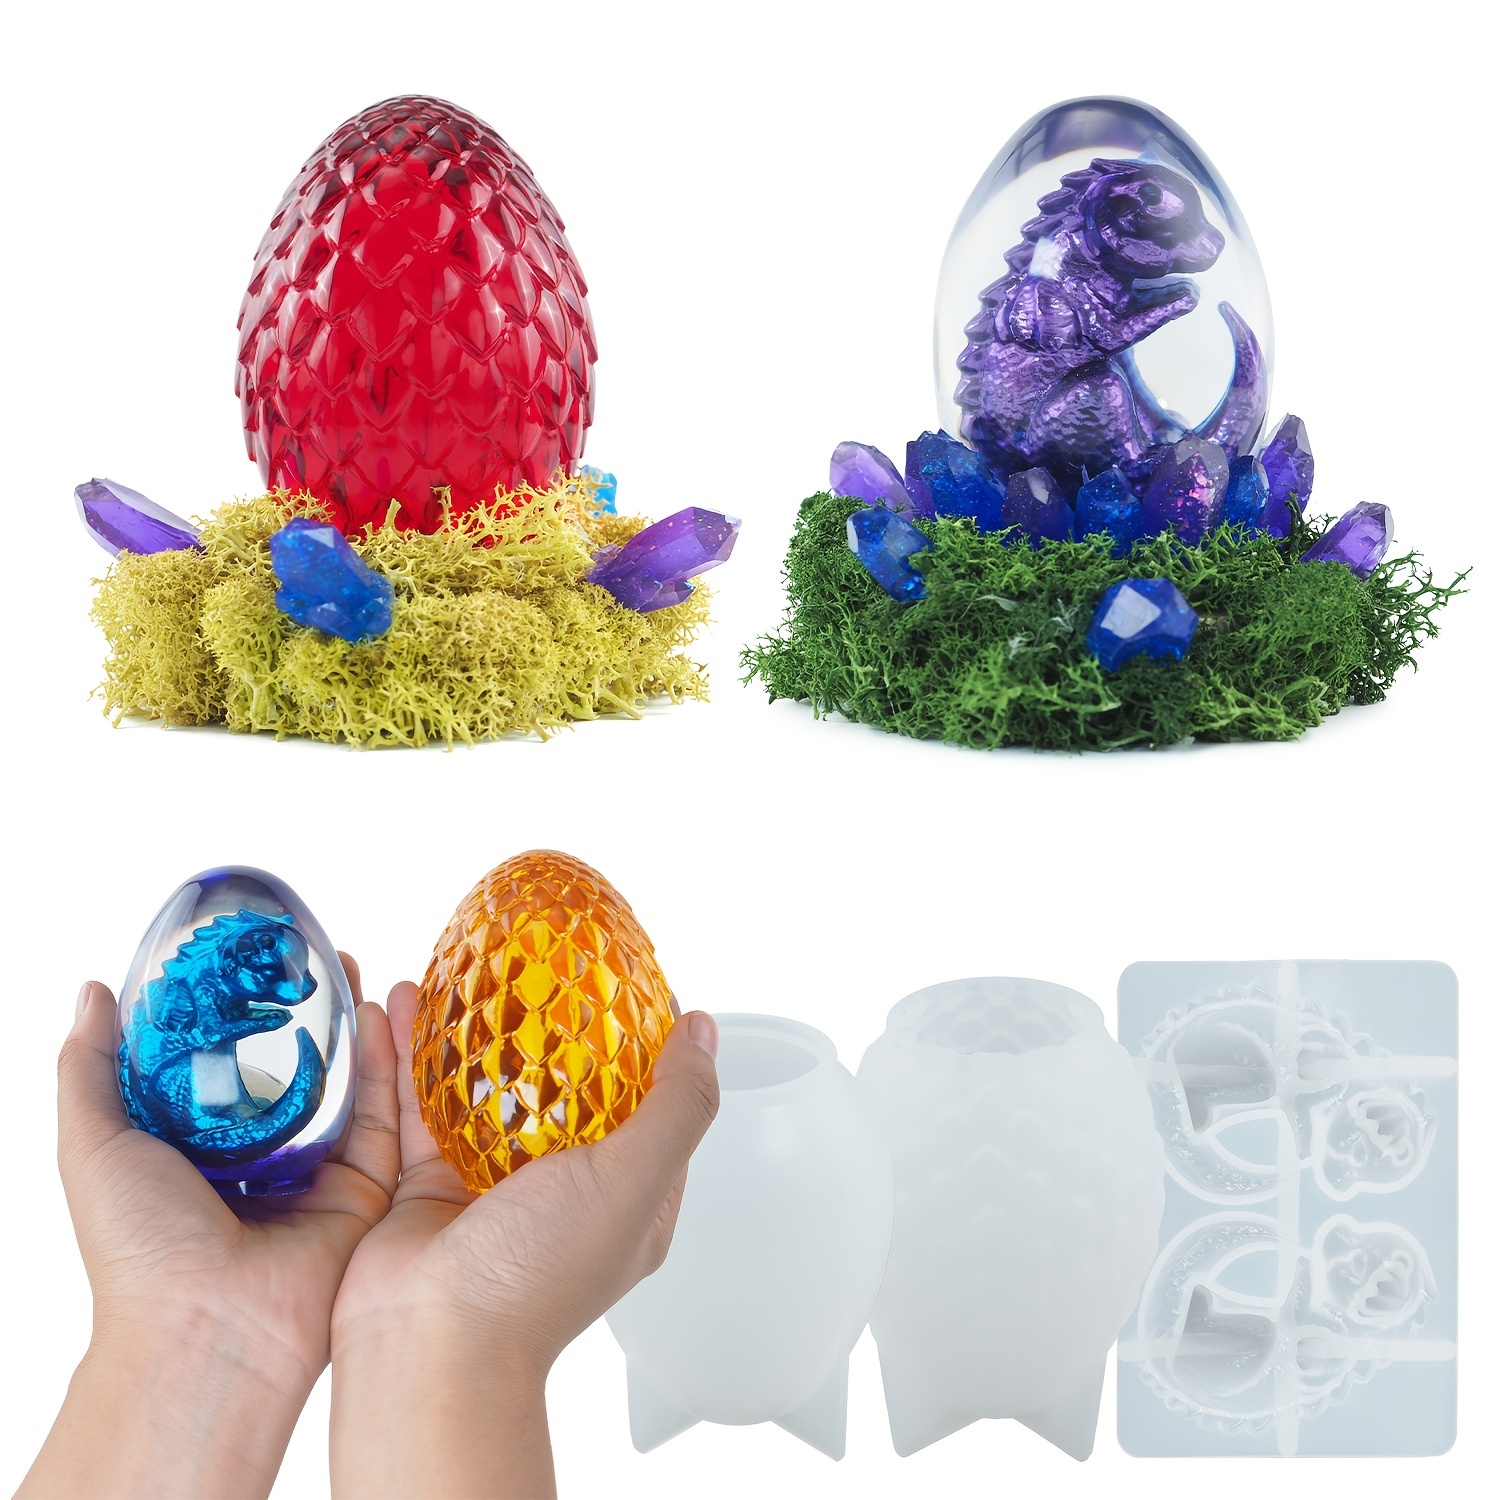 3D Dragon Egg Silicone Mold